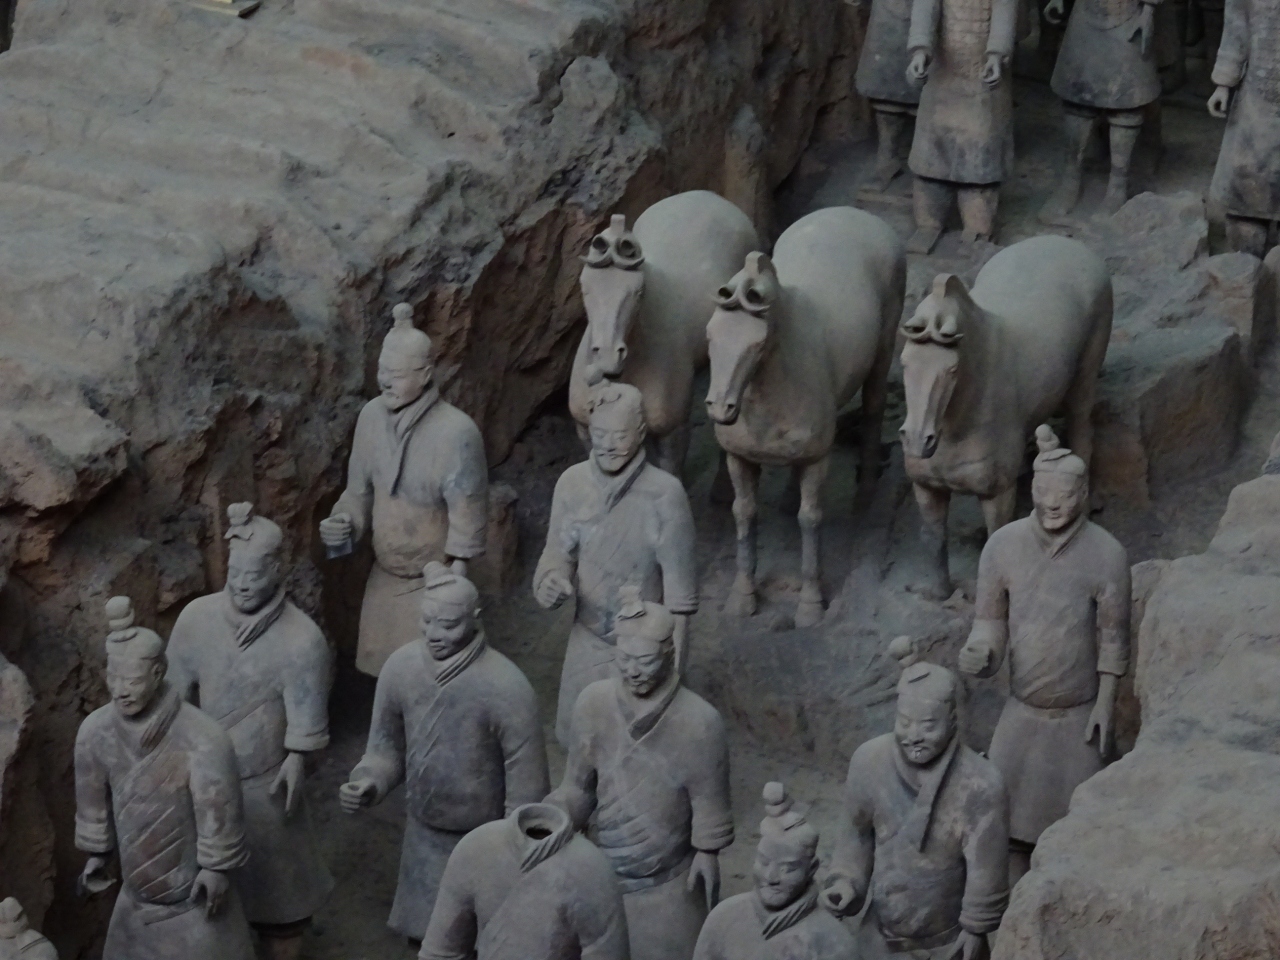 3連休で西安 2 兵馬俑 始皇帝陵 西安 中国 の旅行記 ブログ By Mondoさん フォートラベル